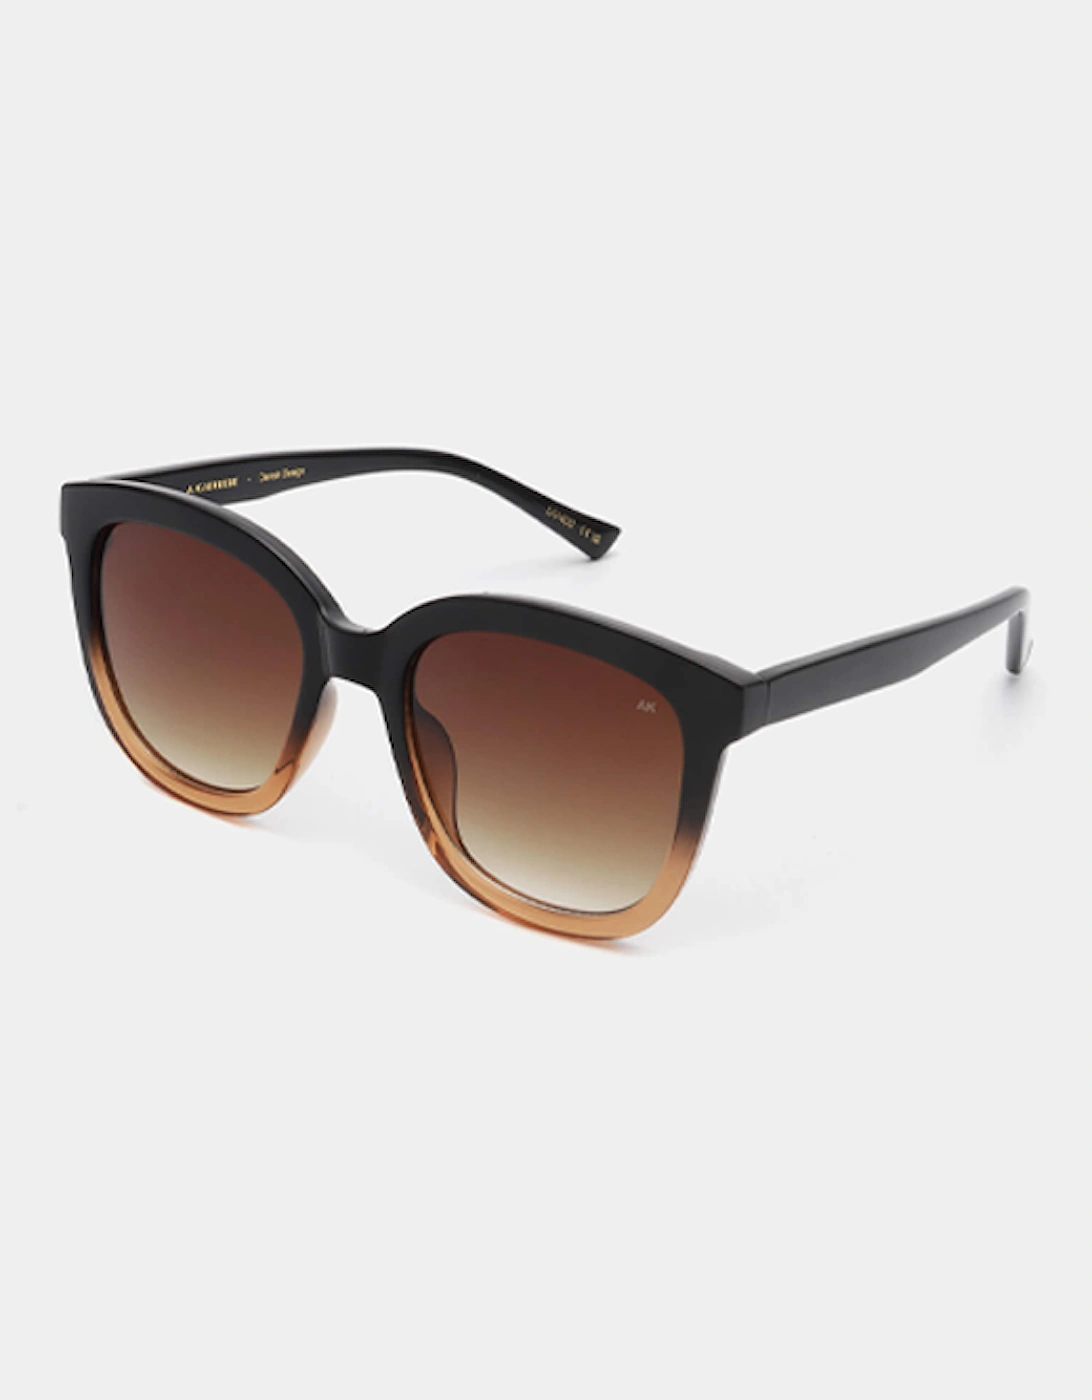 A.Kjaerbede Billy Sunglasses Black/Brown Transparent, 5 of 4